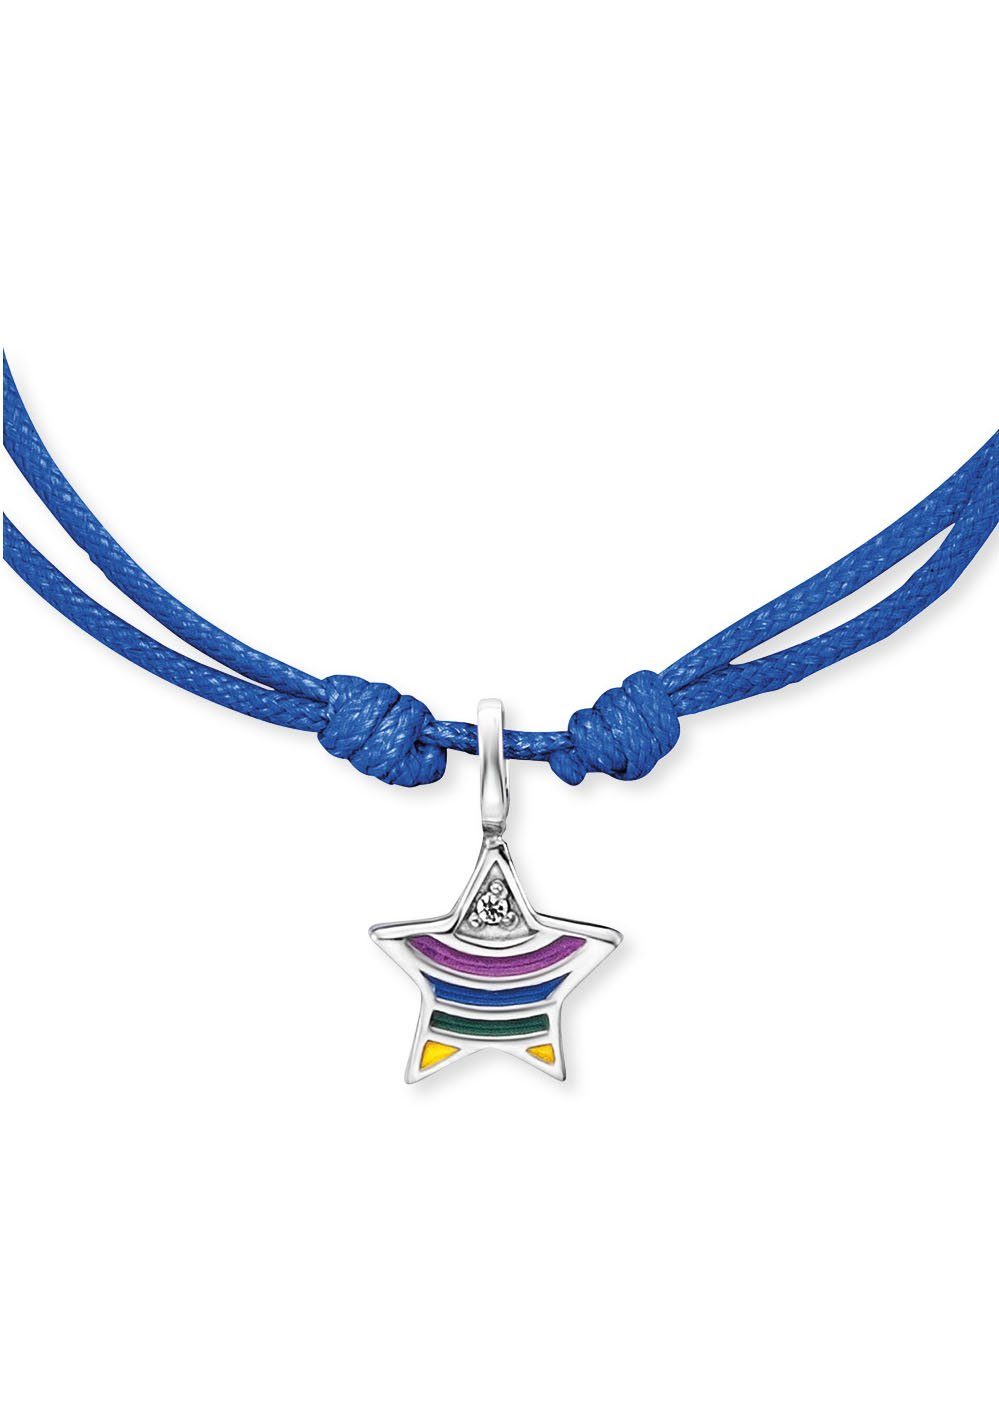 Herzengel Armband Stern rainbow, mit HEB-STAR-RAINBOW, Emaille